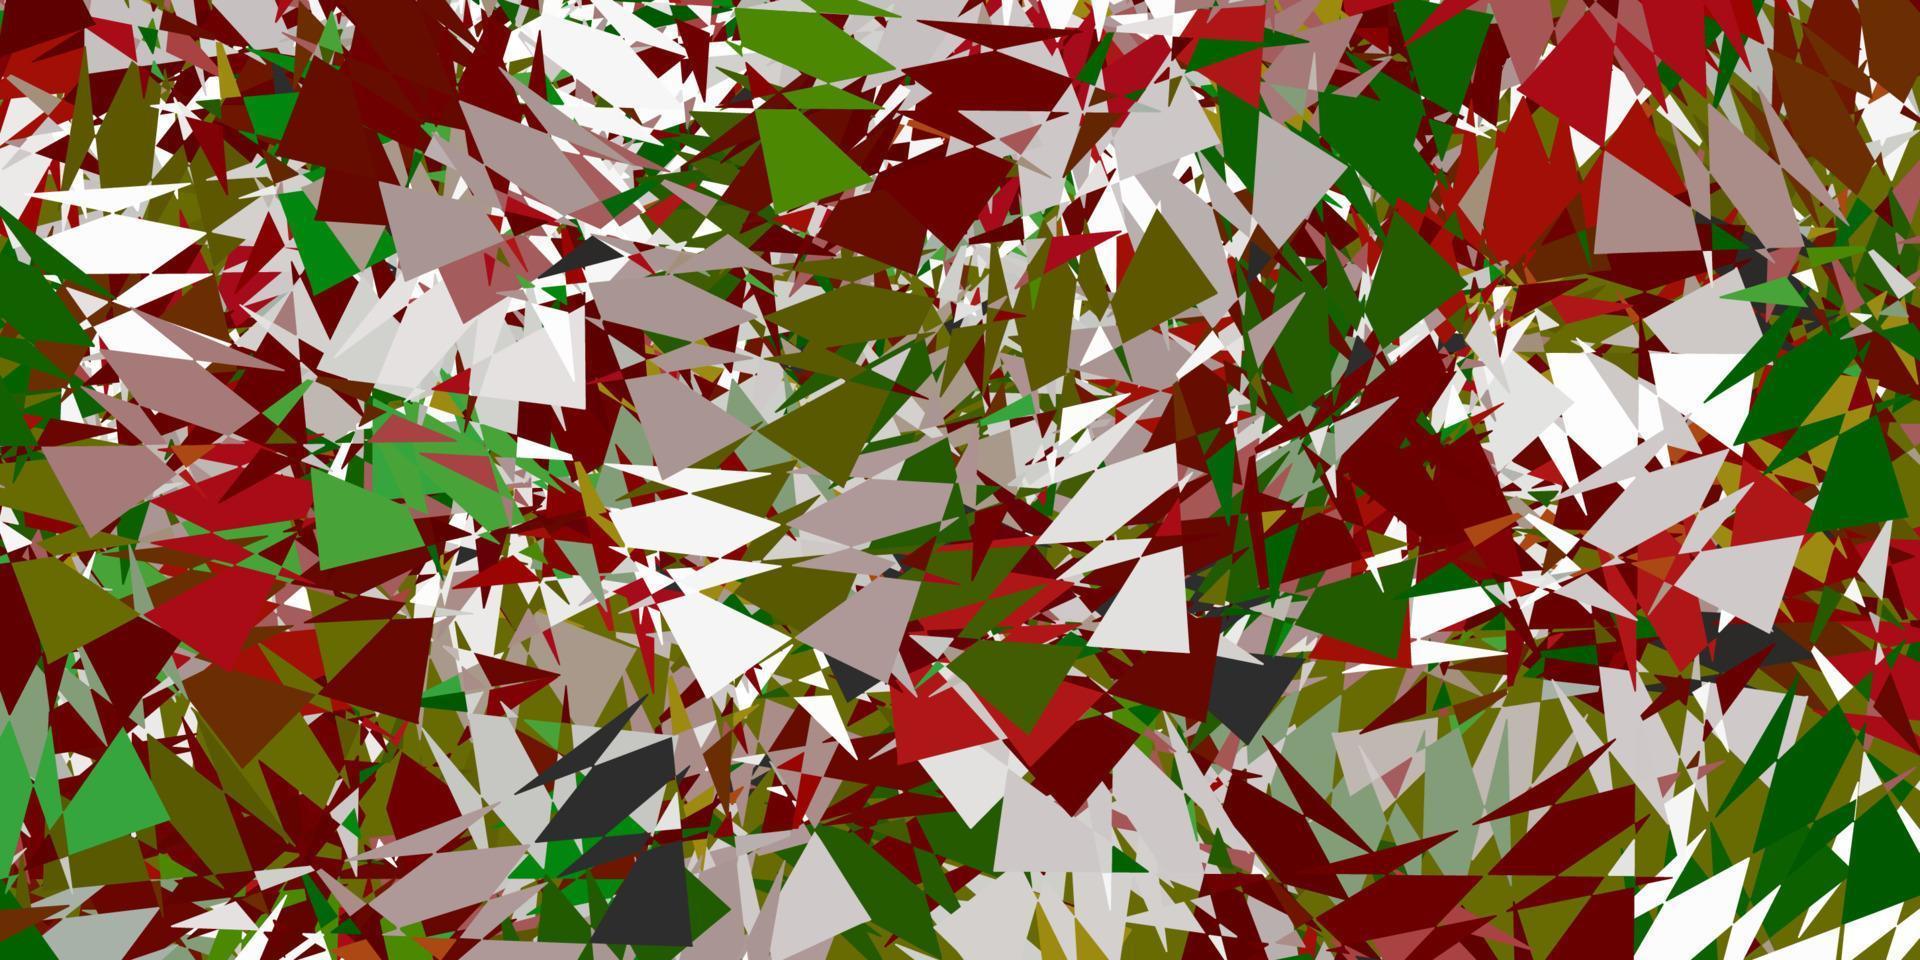 layout de vetor verde claro e vermelho com formas triangulares.